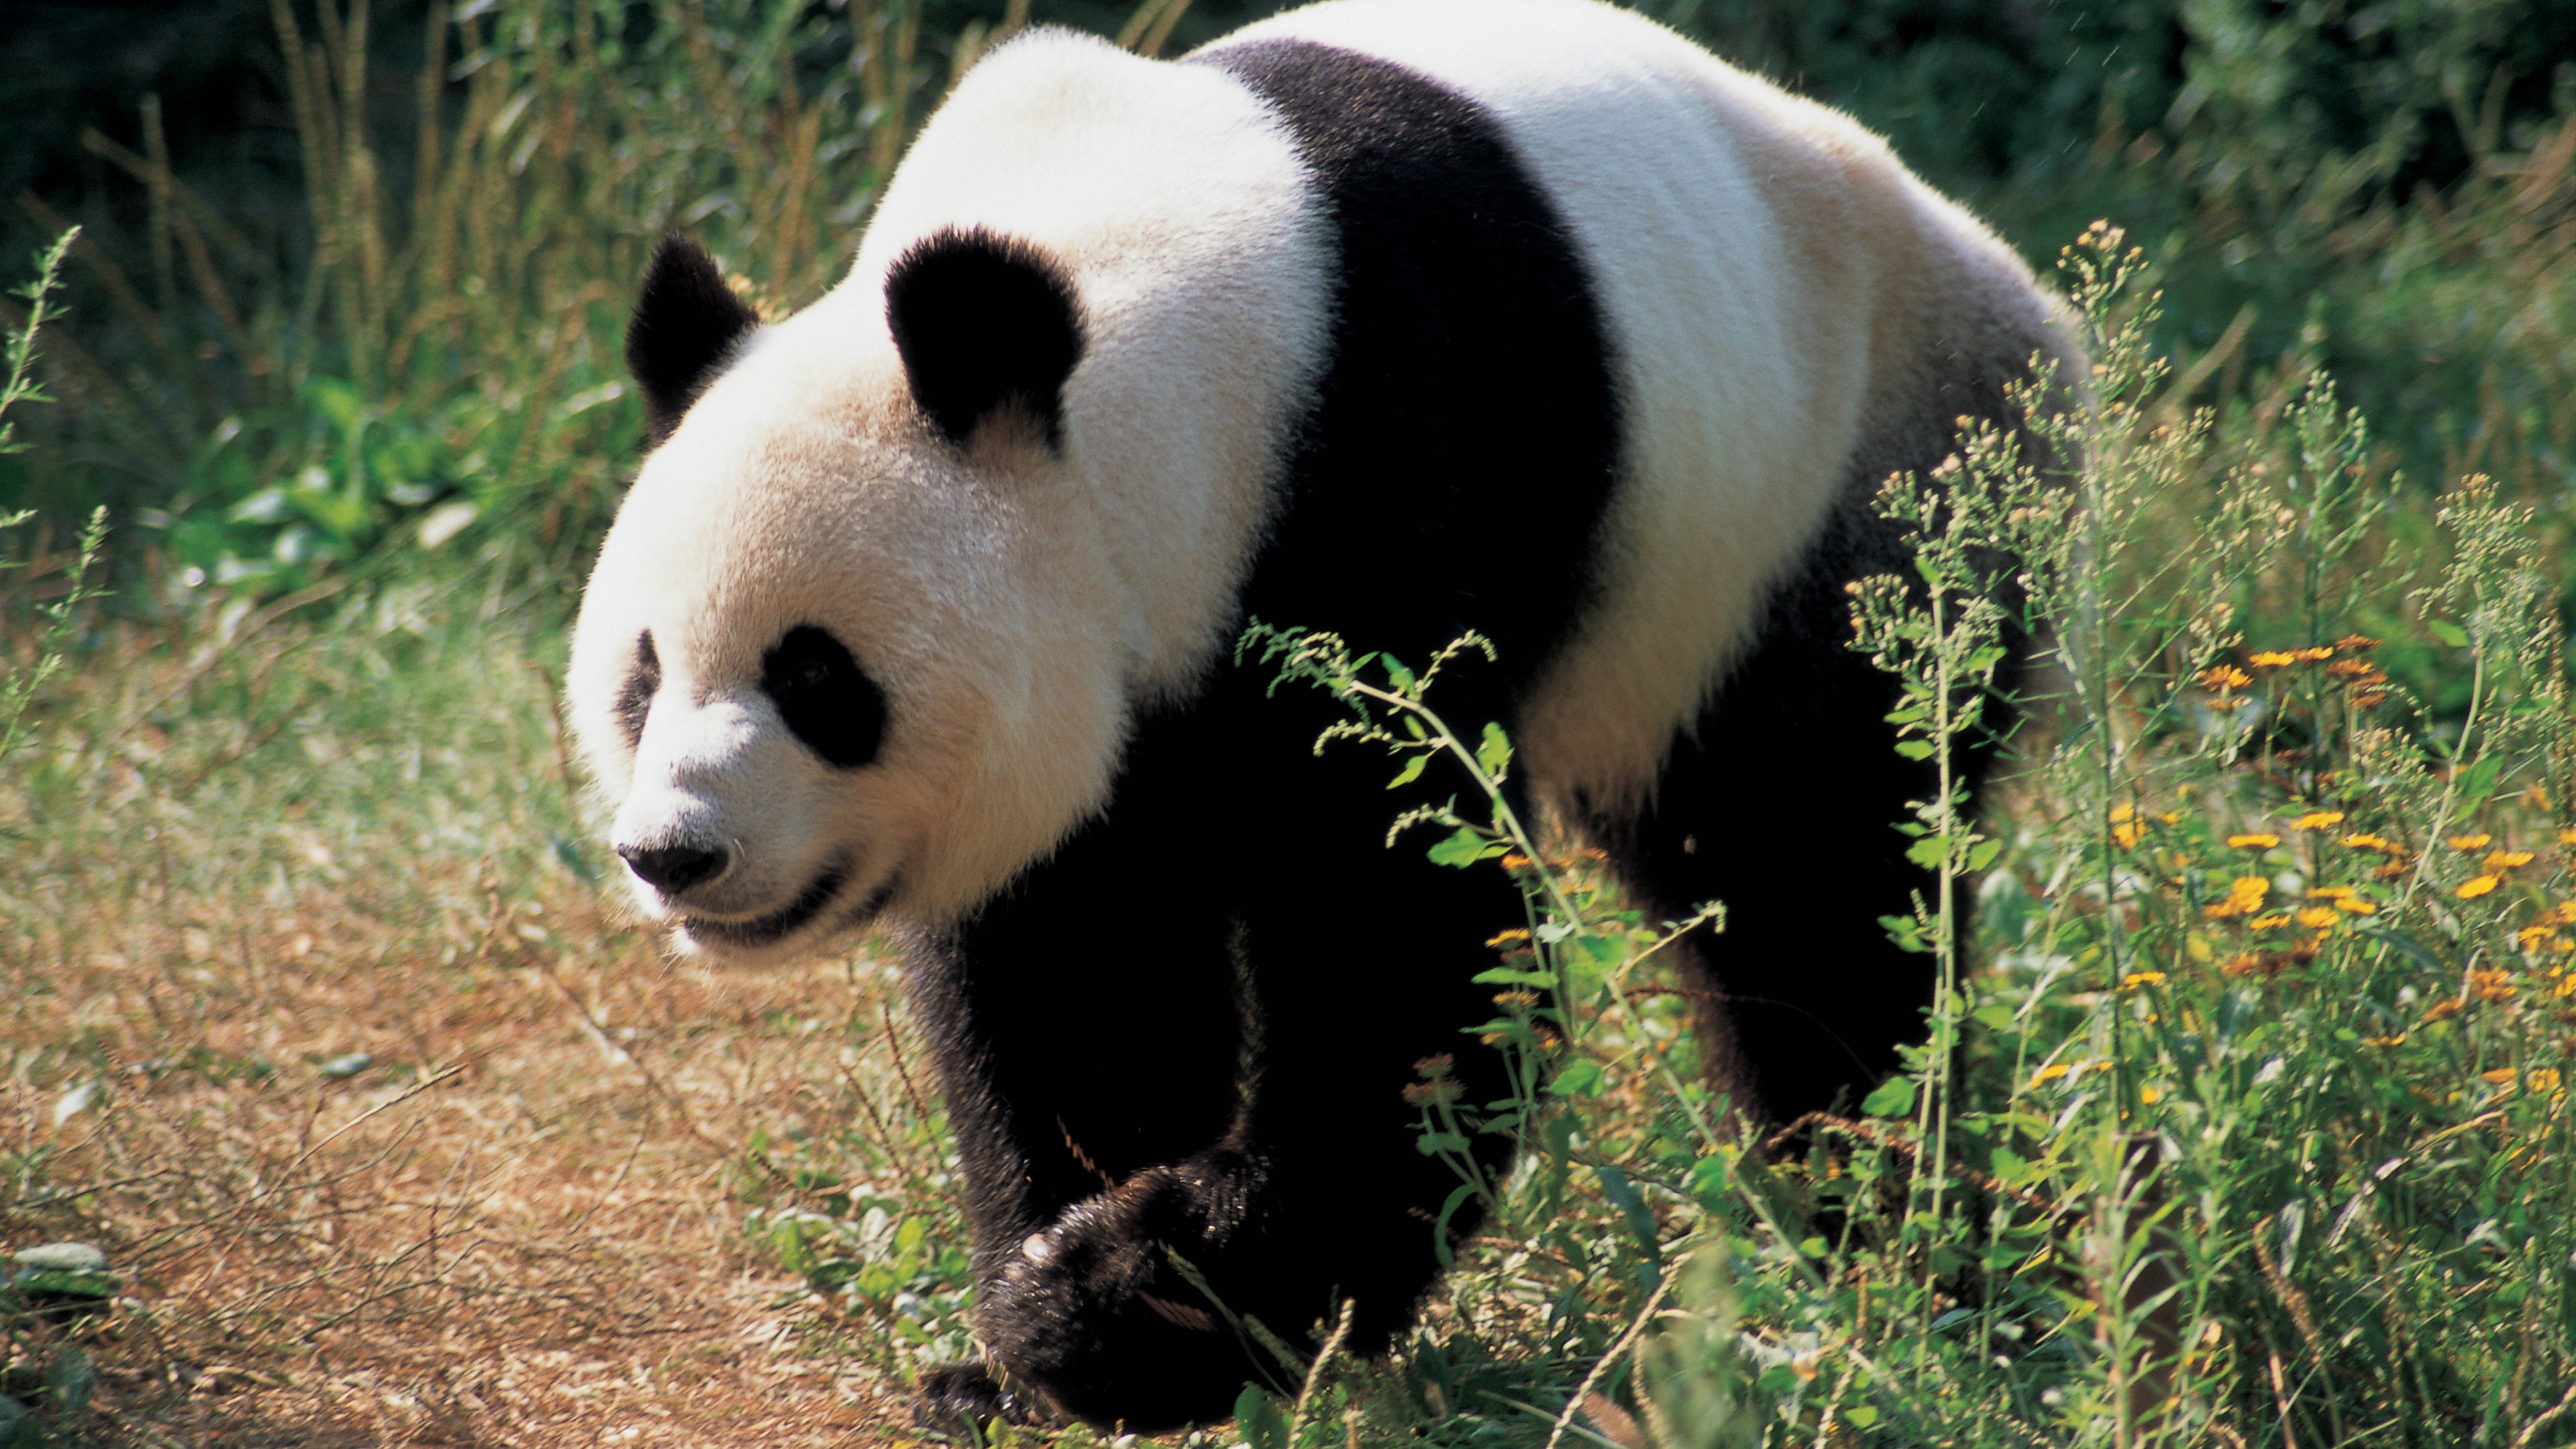 大熊猫, 陆地动物, 熊, 野生动物, 可爱 壁纸 3840x2160 允许